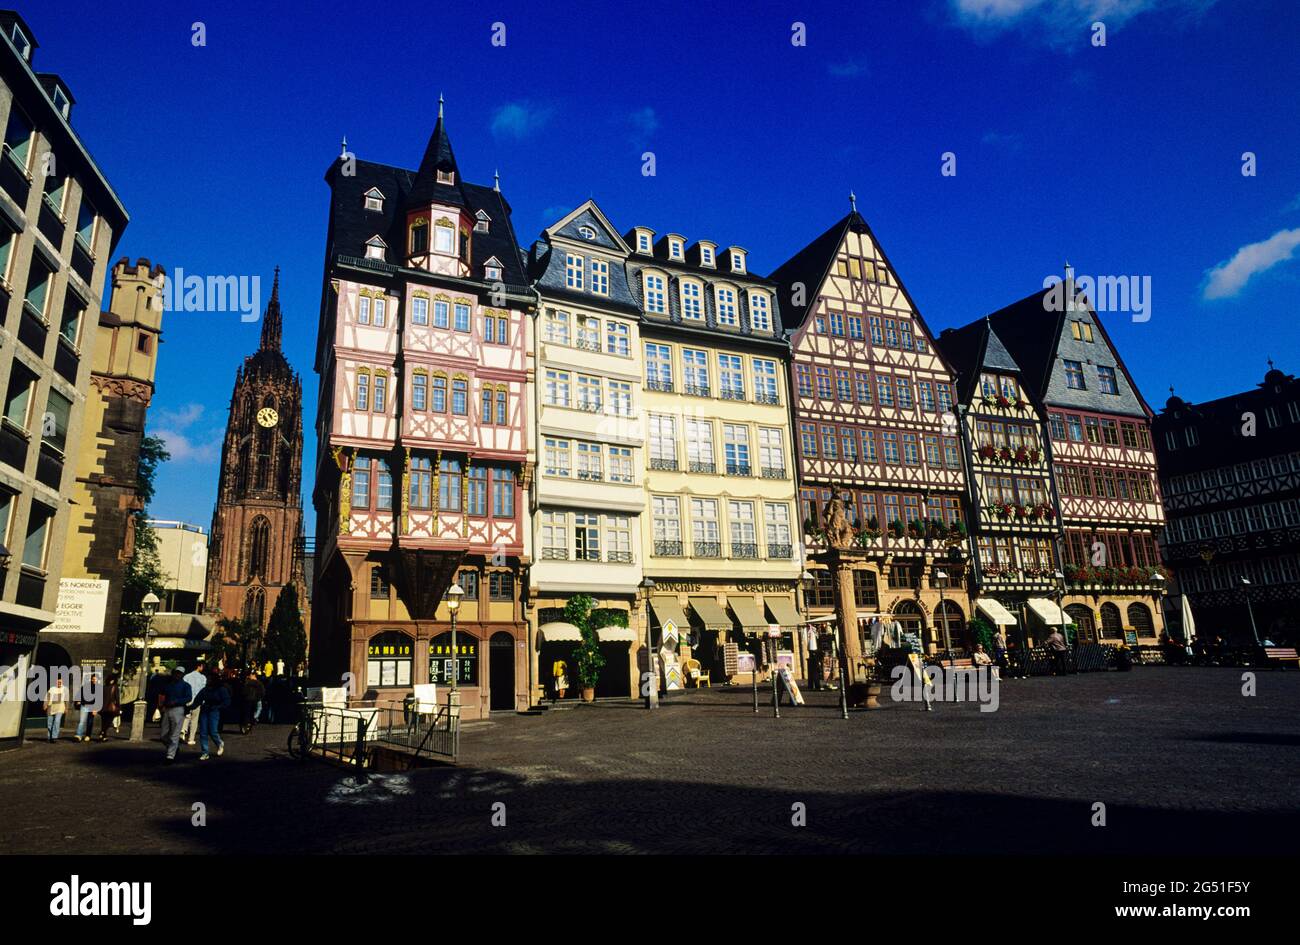 Case cittadine nella piazza della città, Romerberg, Francoforte, Assia, Germania Foto Stock